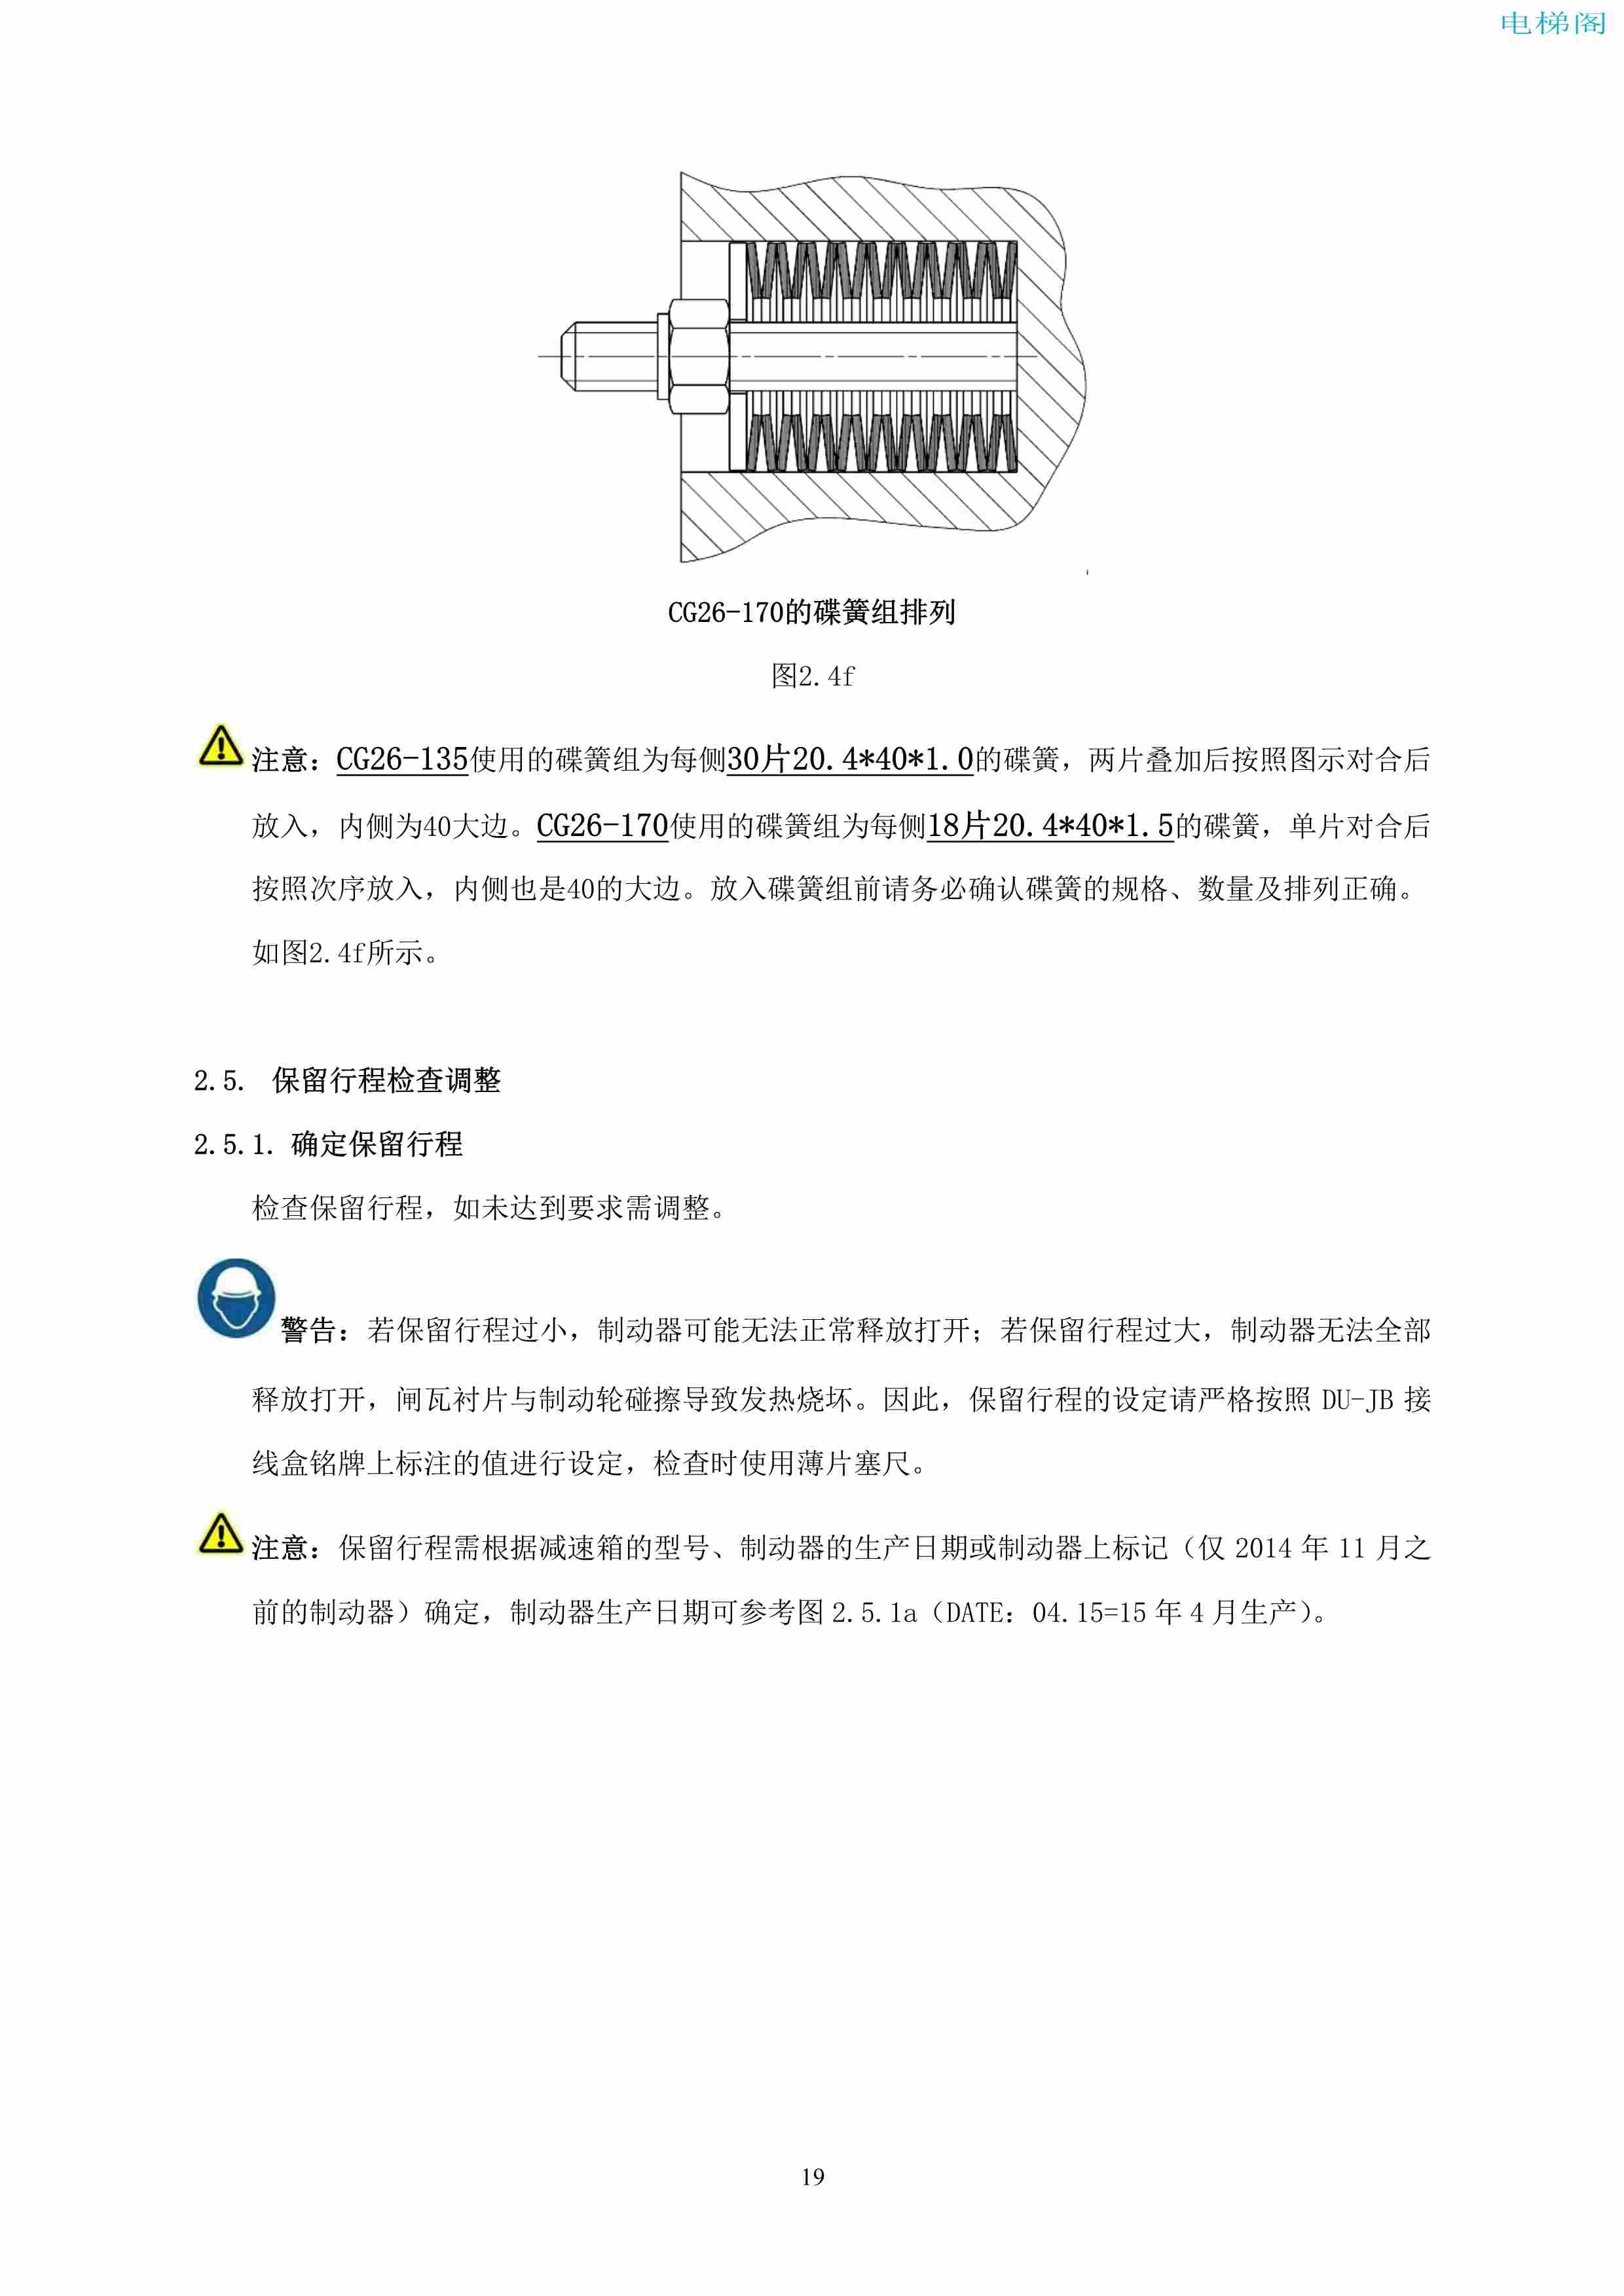 上海三菱电梯有限公司自动扶梯制动器维护作业要领汇编_20.jpg